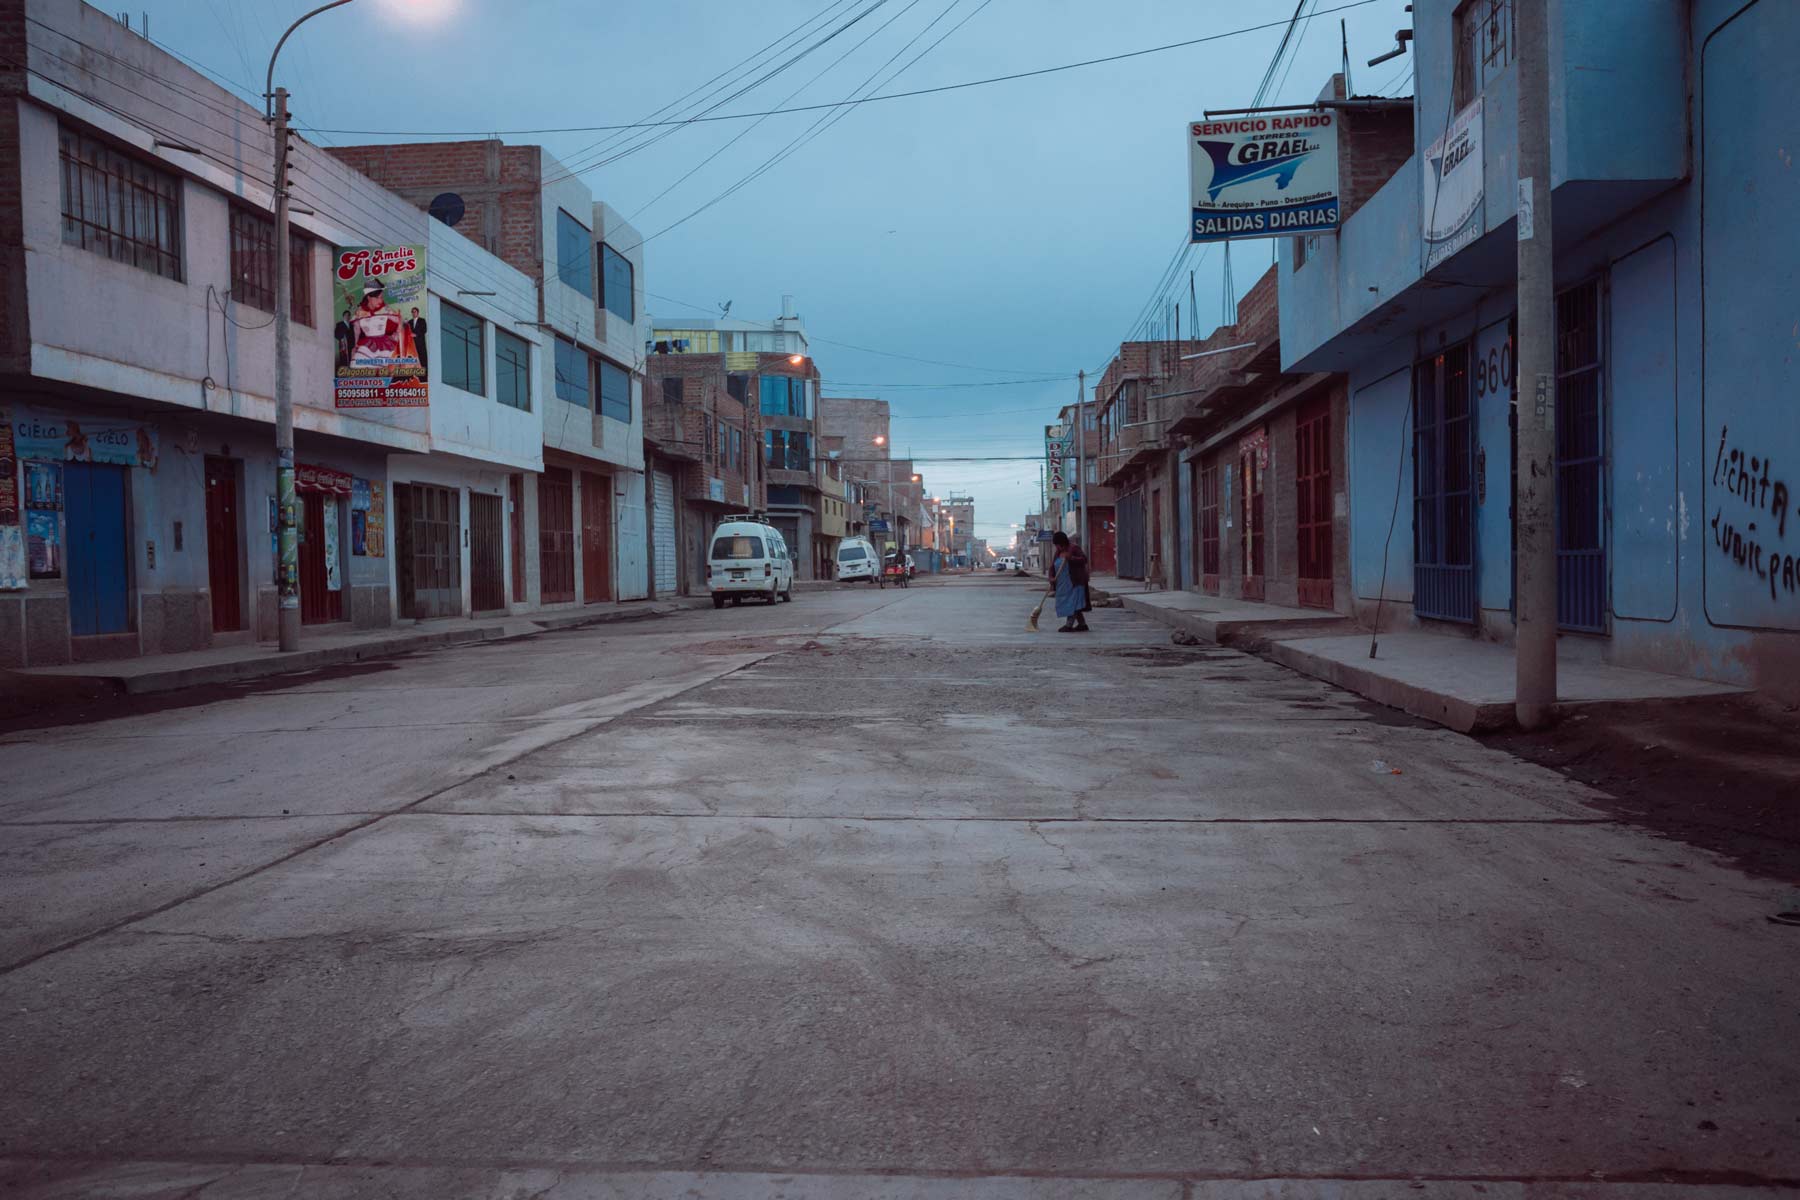 A woman sweeps an empty street as dawn breaks in Juliaca.